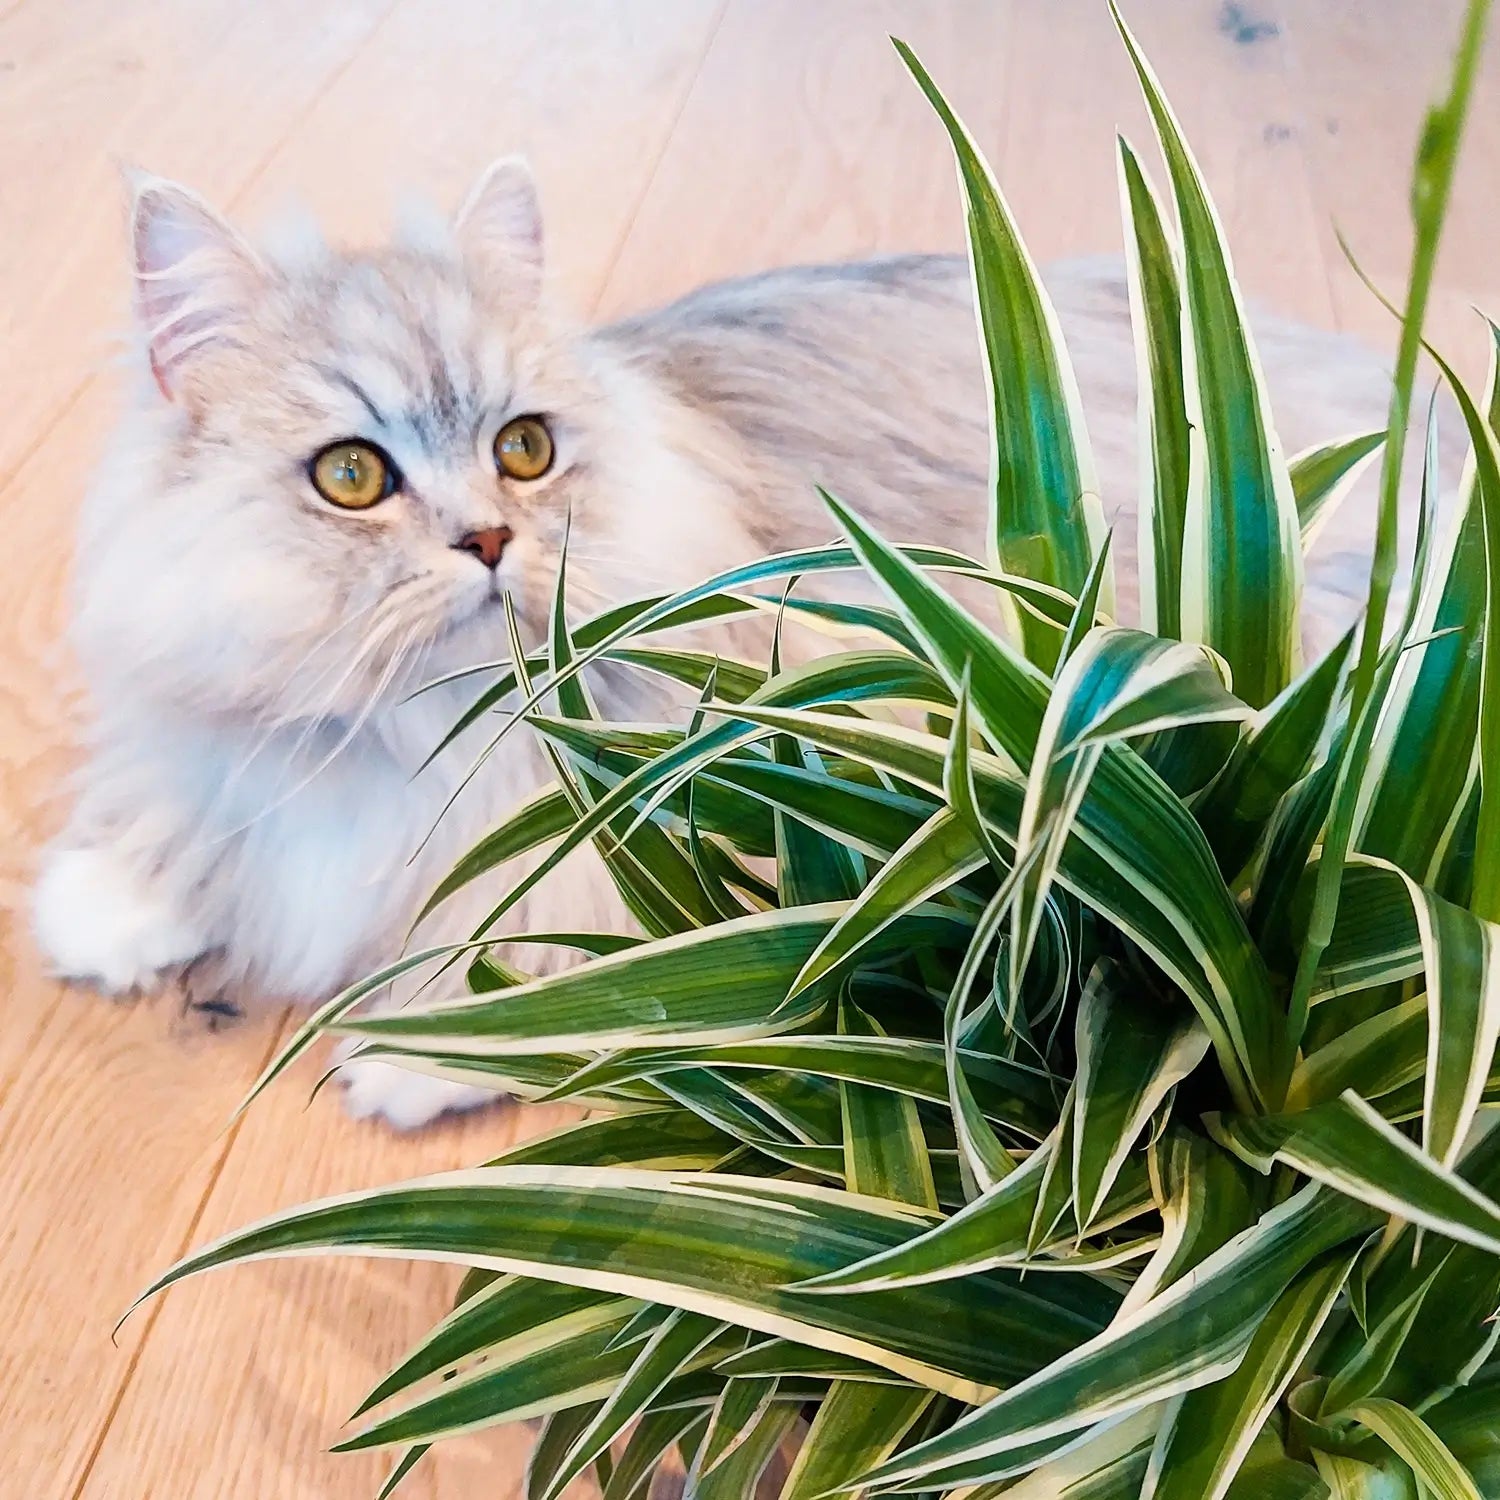 Weiße Katze mit tierfreundlicher Grünlilie